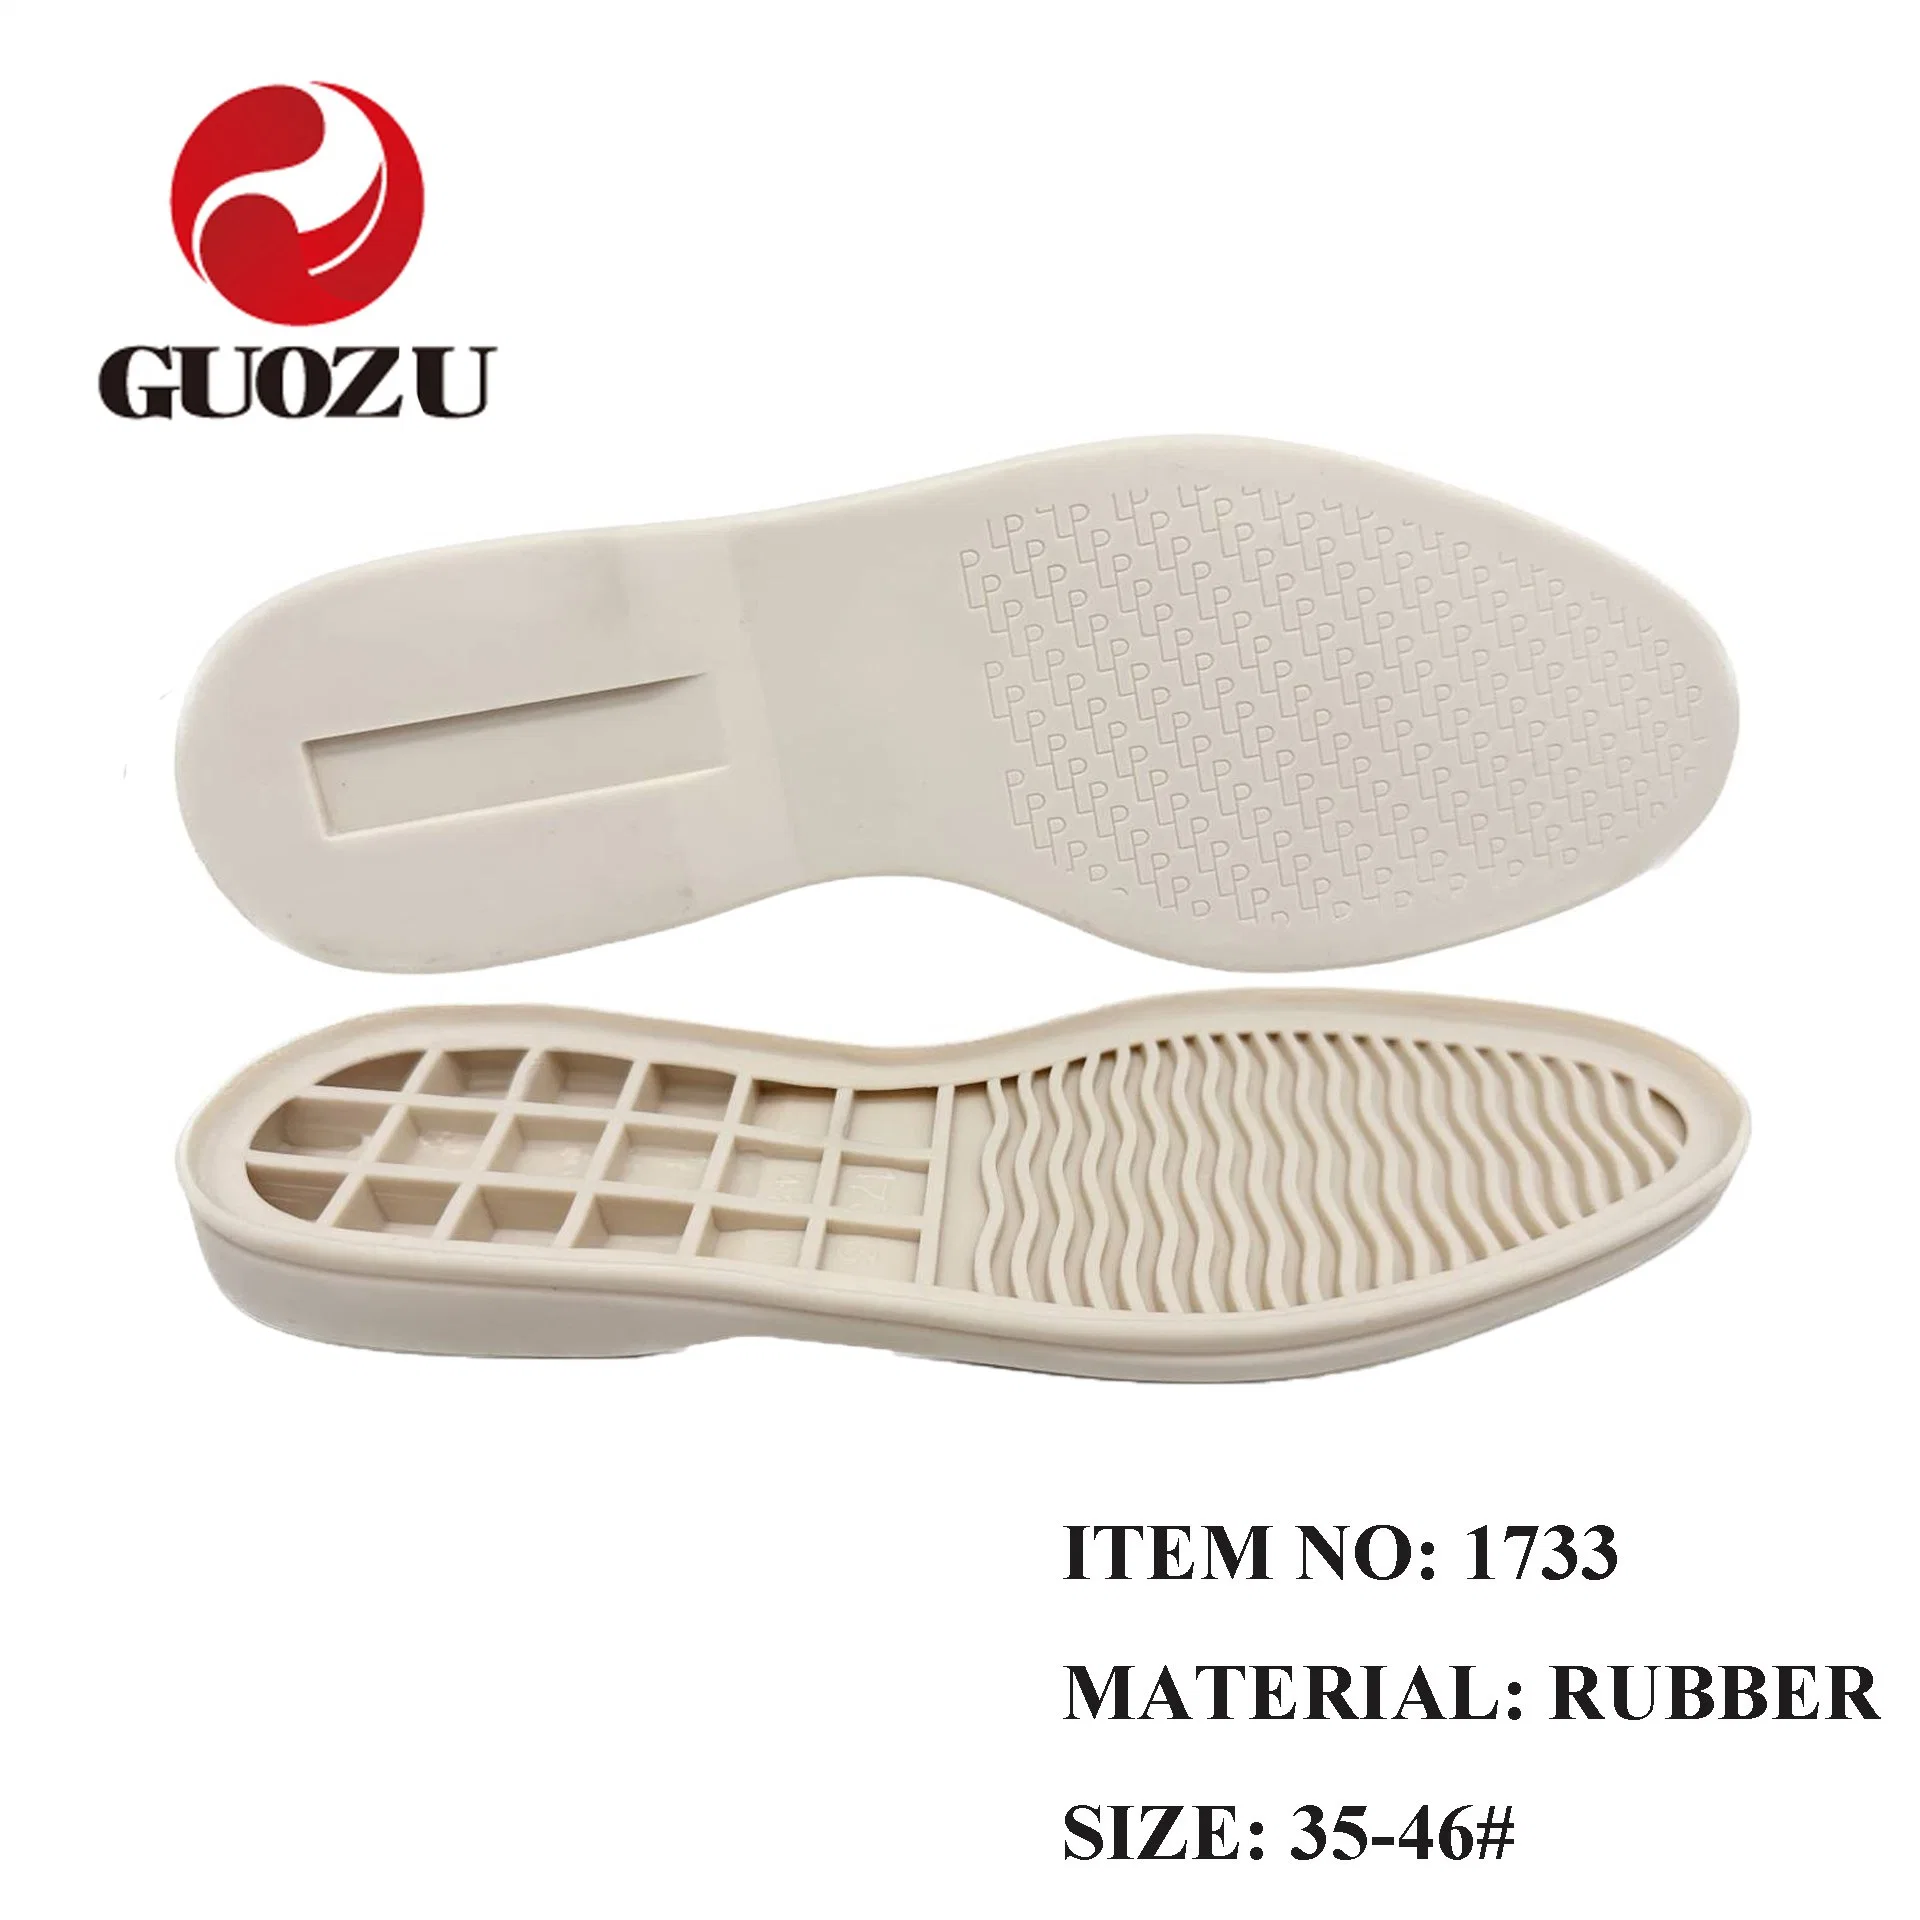 Wholesale Rubber Soles for Dress Shoe Formal Shoes Factory Antislip